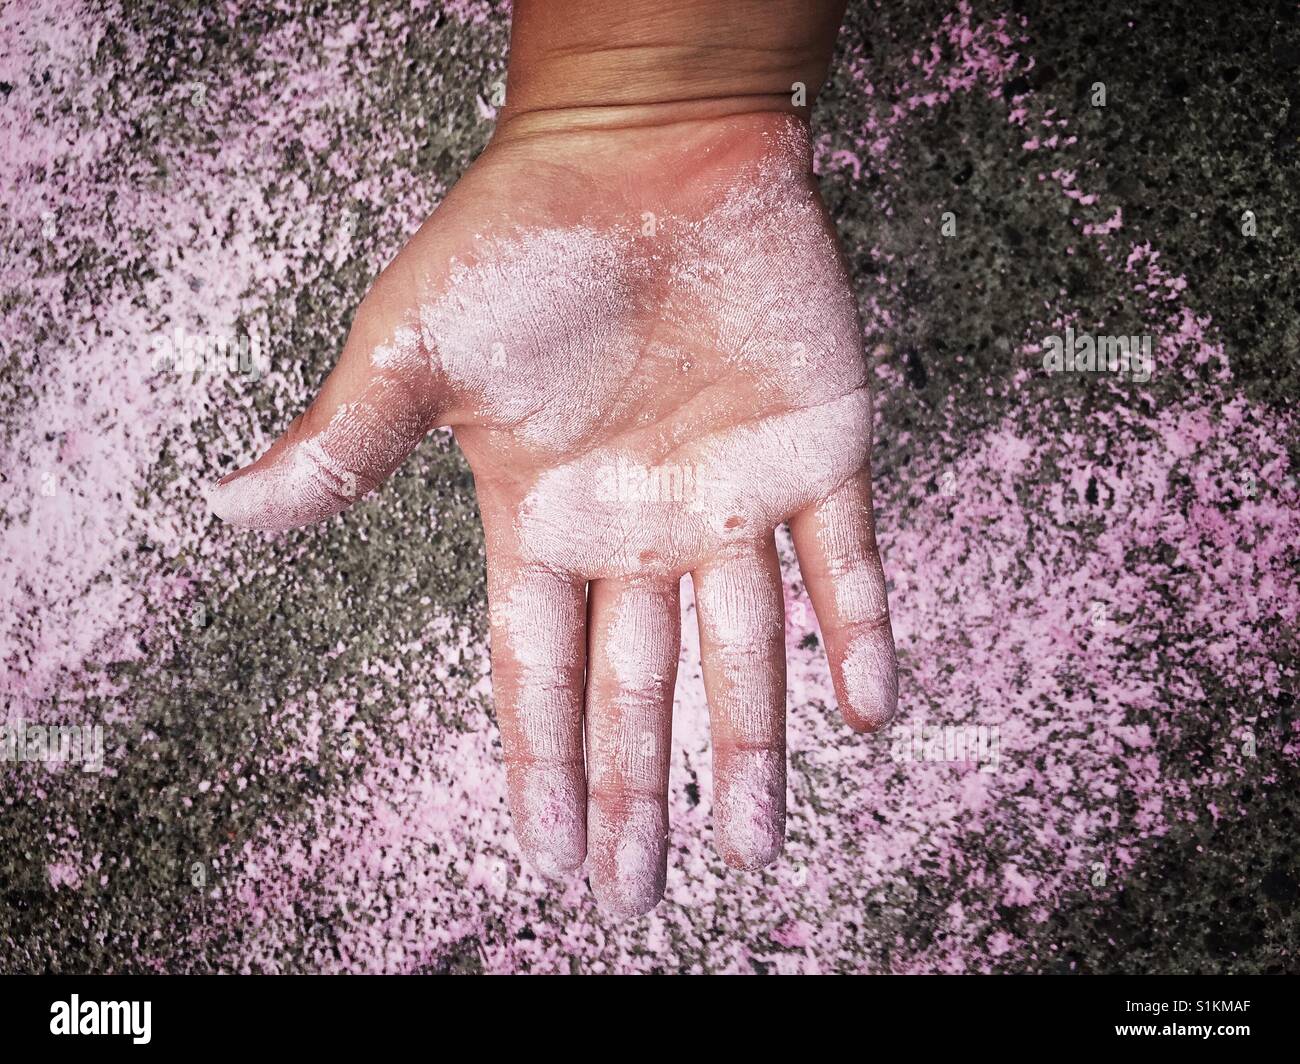 6 Jahre altes Kind Hand mit rosa Kreide beschmiert Stockfoto